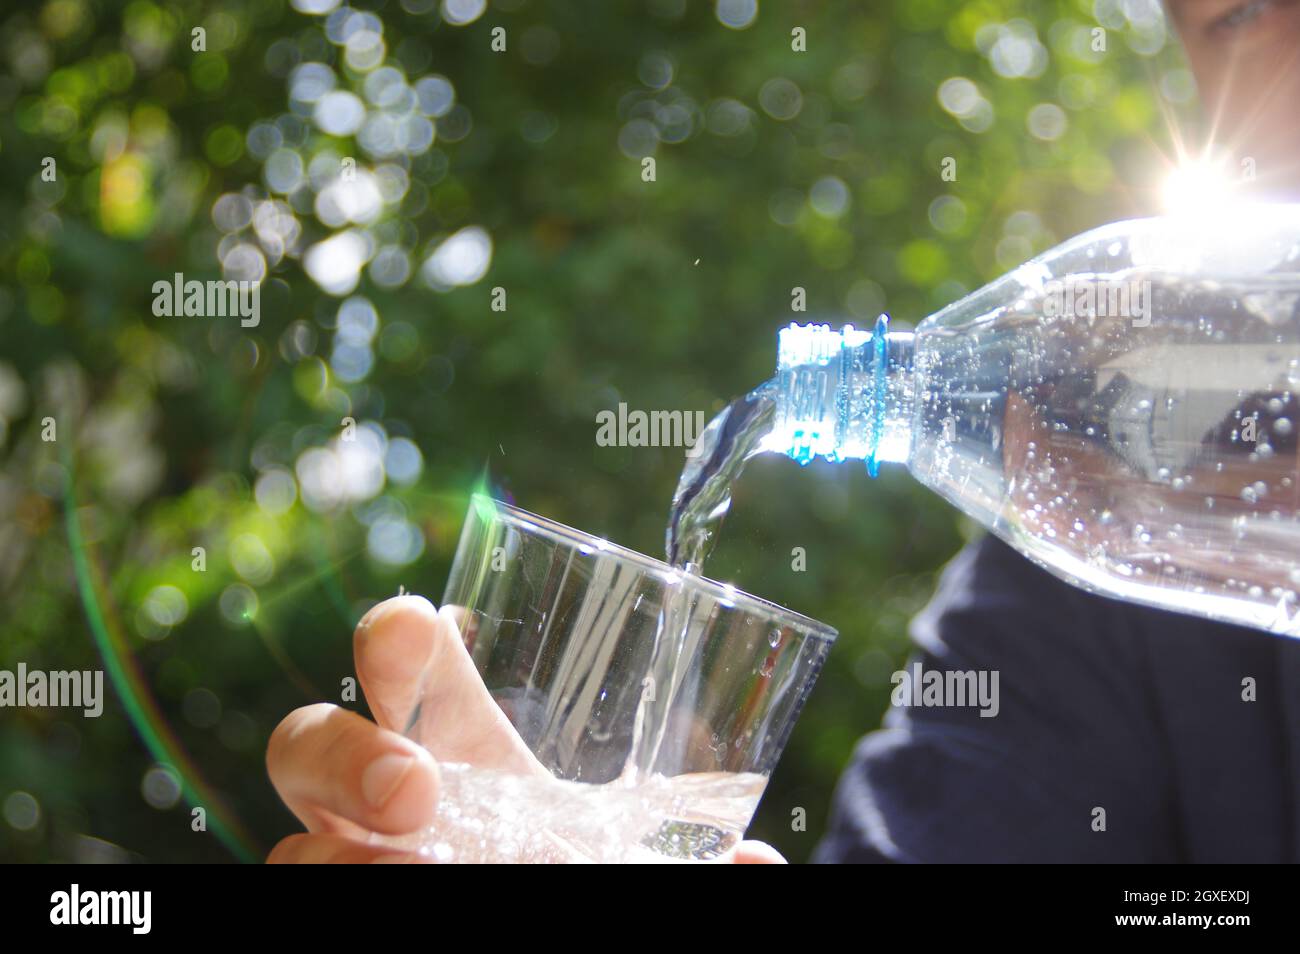 Wasser in ein Glas in der Hand mit Garten im Hintergrund gegossen. Erfrischung mit sauberem, natürlichem Mineralwasser aus einer Plastikflasche. Stockfoto